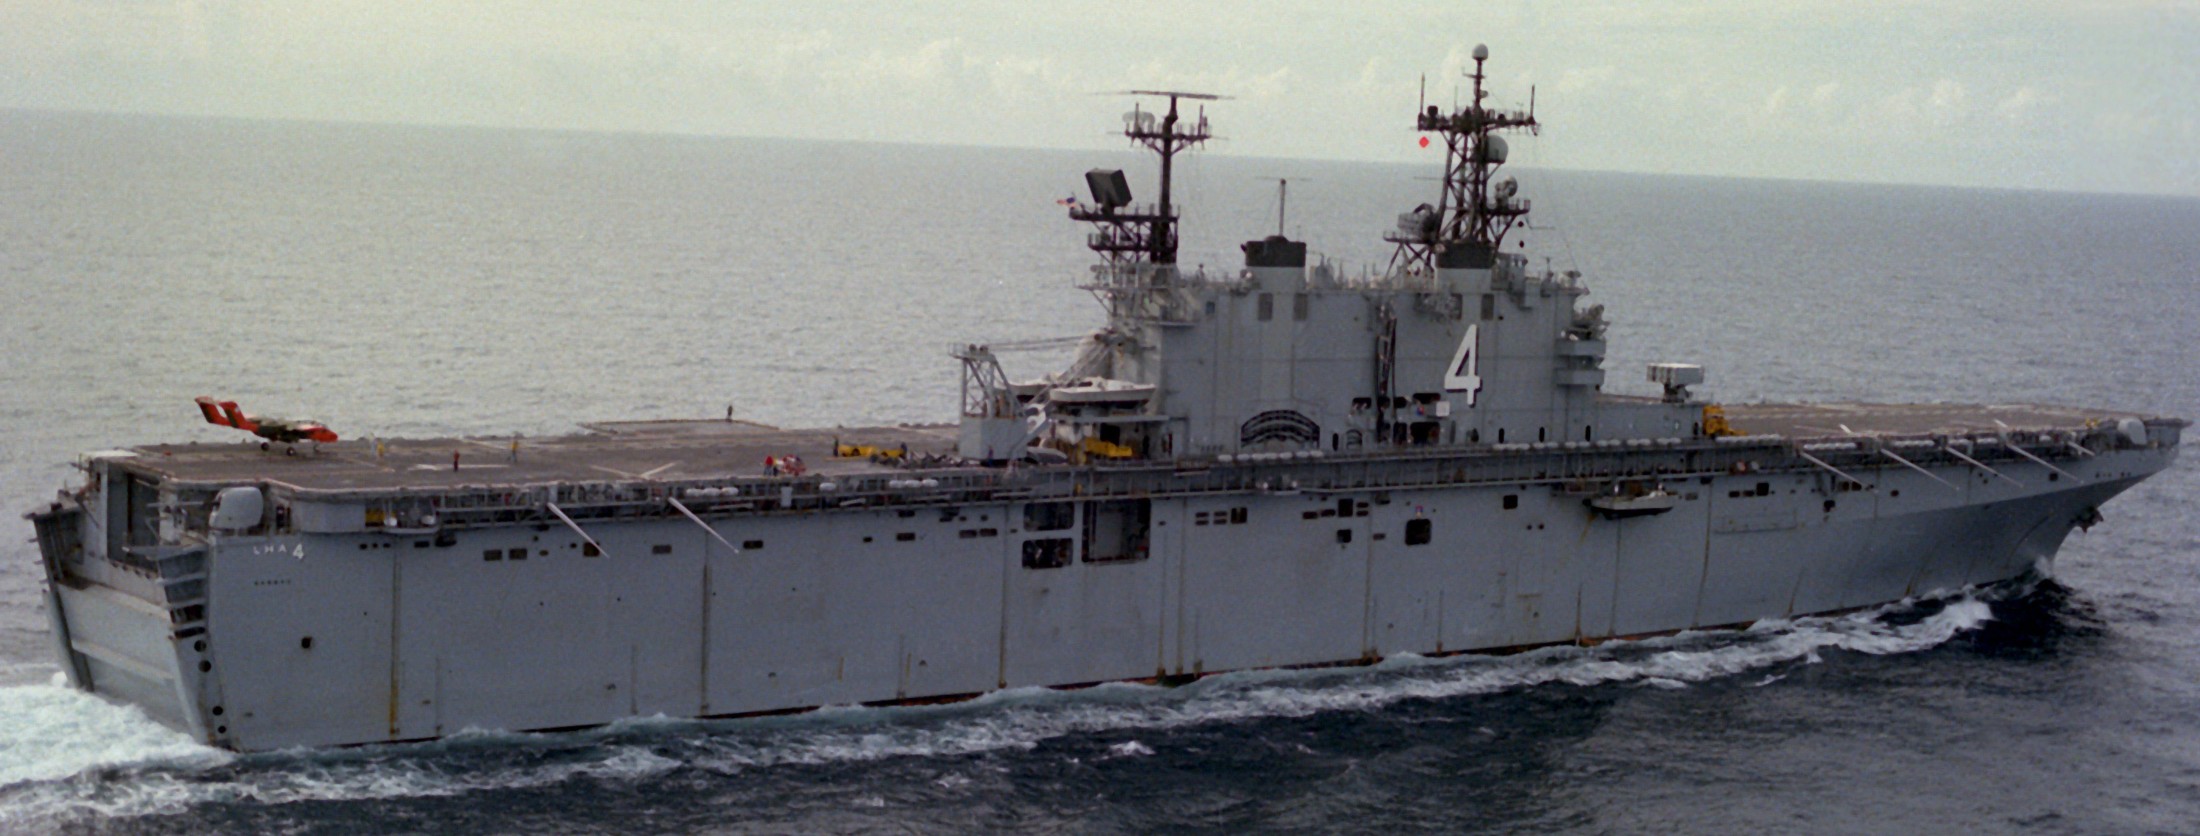 lha-4 uss nassau tarawa class amphibious assault ship us navy 90 ov-10a bronco vmo-1